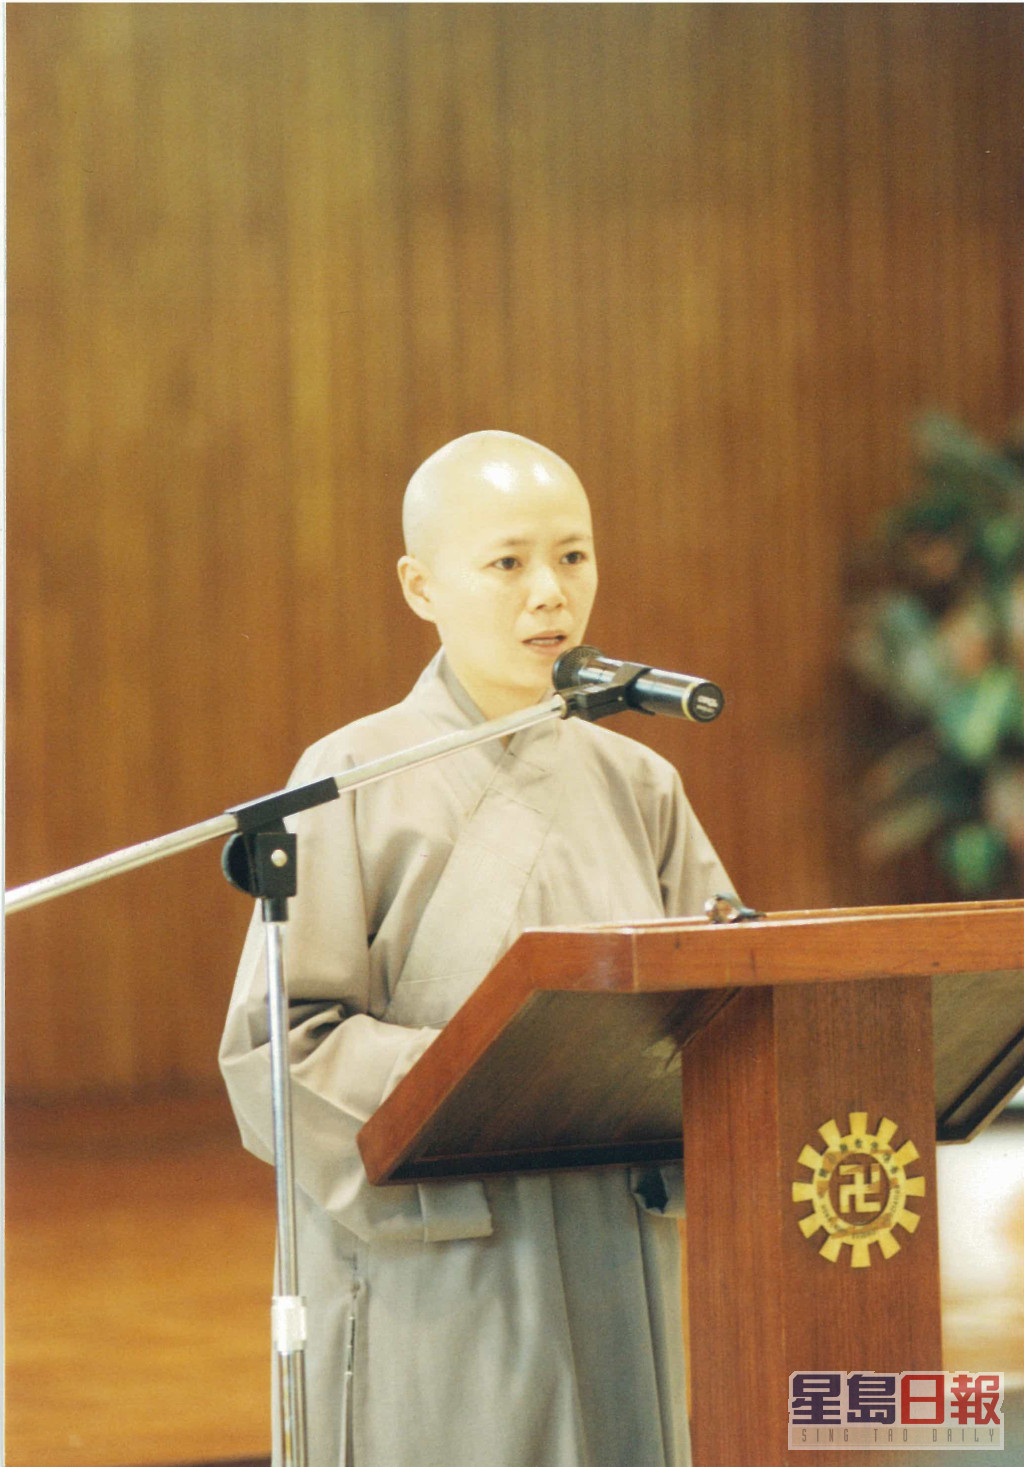 庄文清约10年前公开演讲，分享身世，希望鼓励大家去面对困苦，无怨无悔地继续之后的人生路。